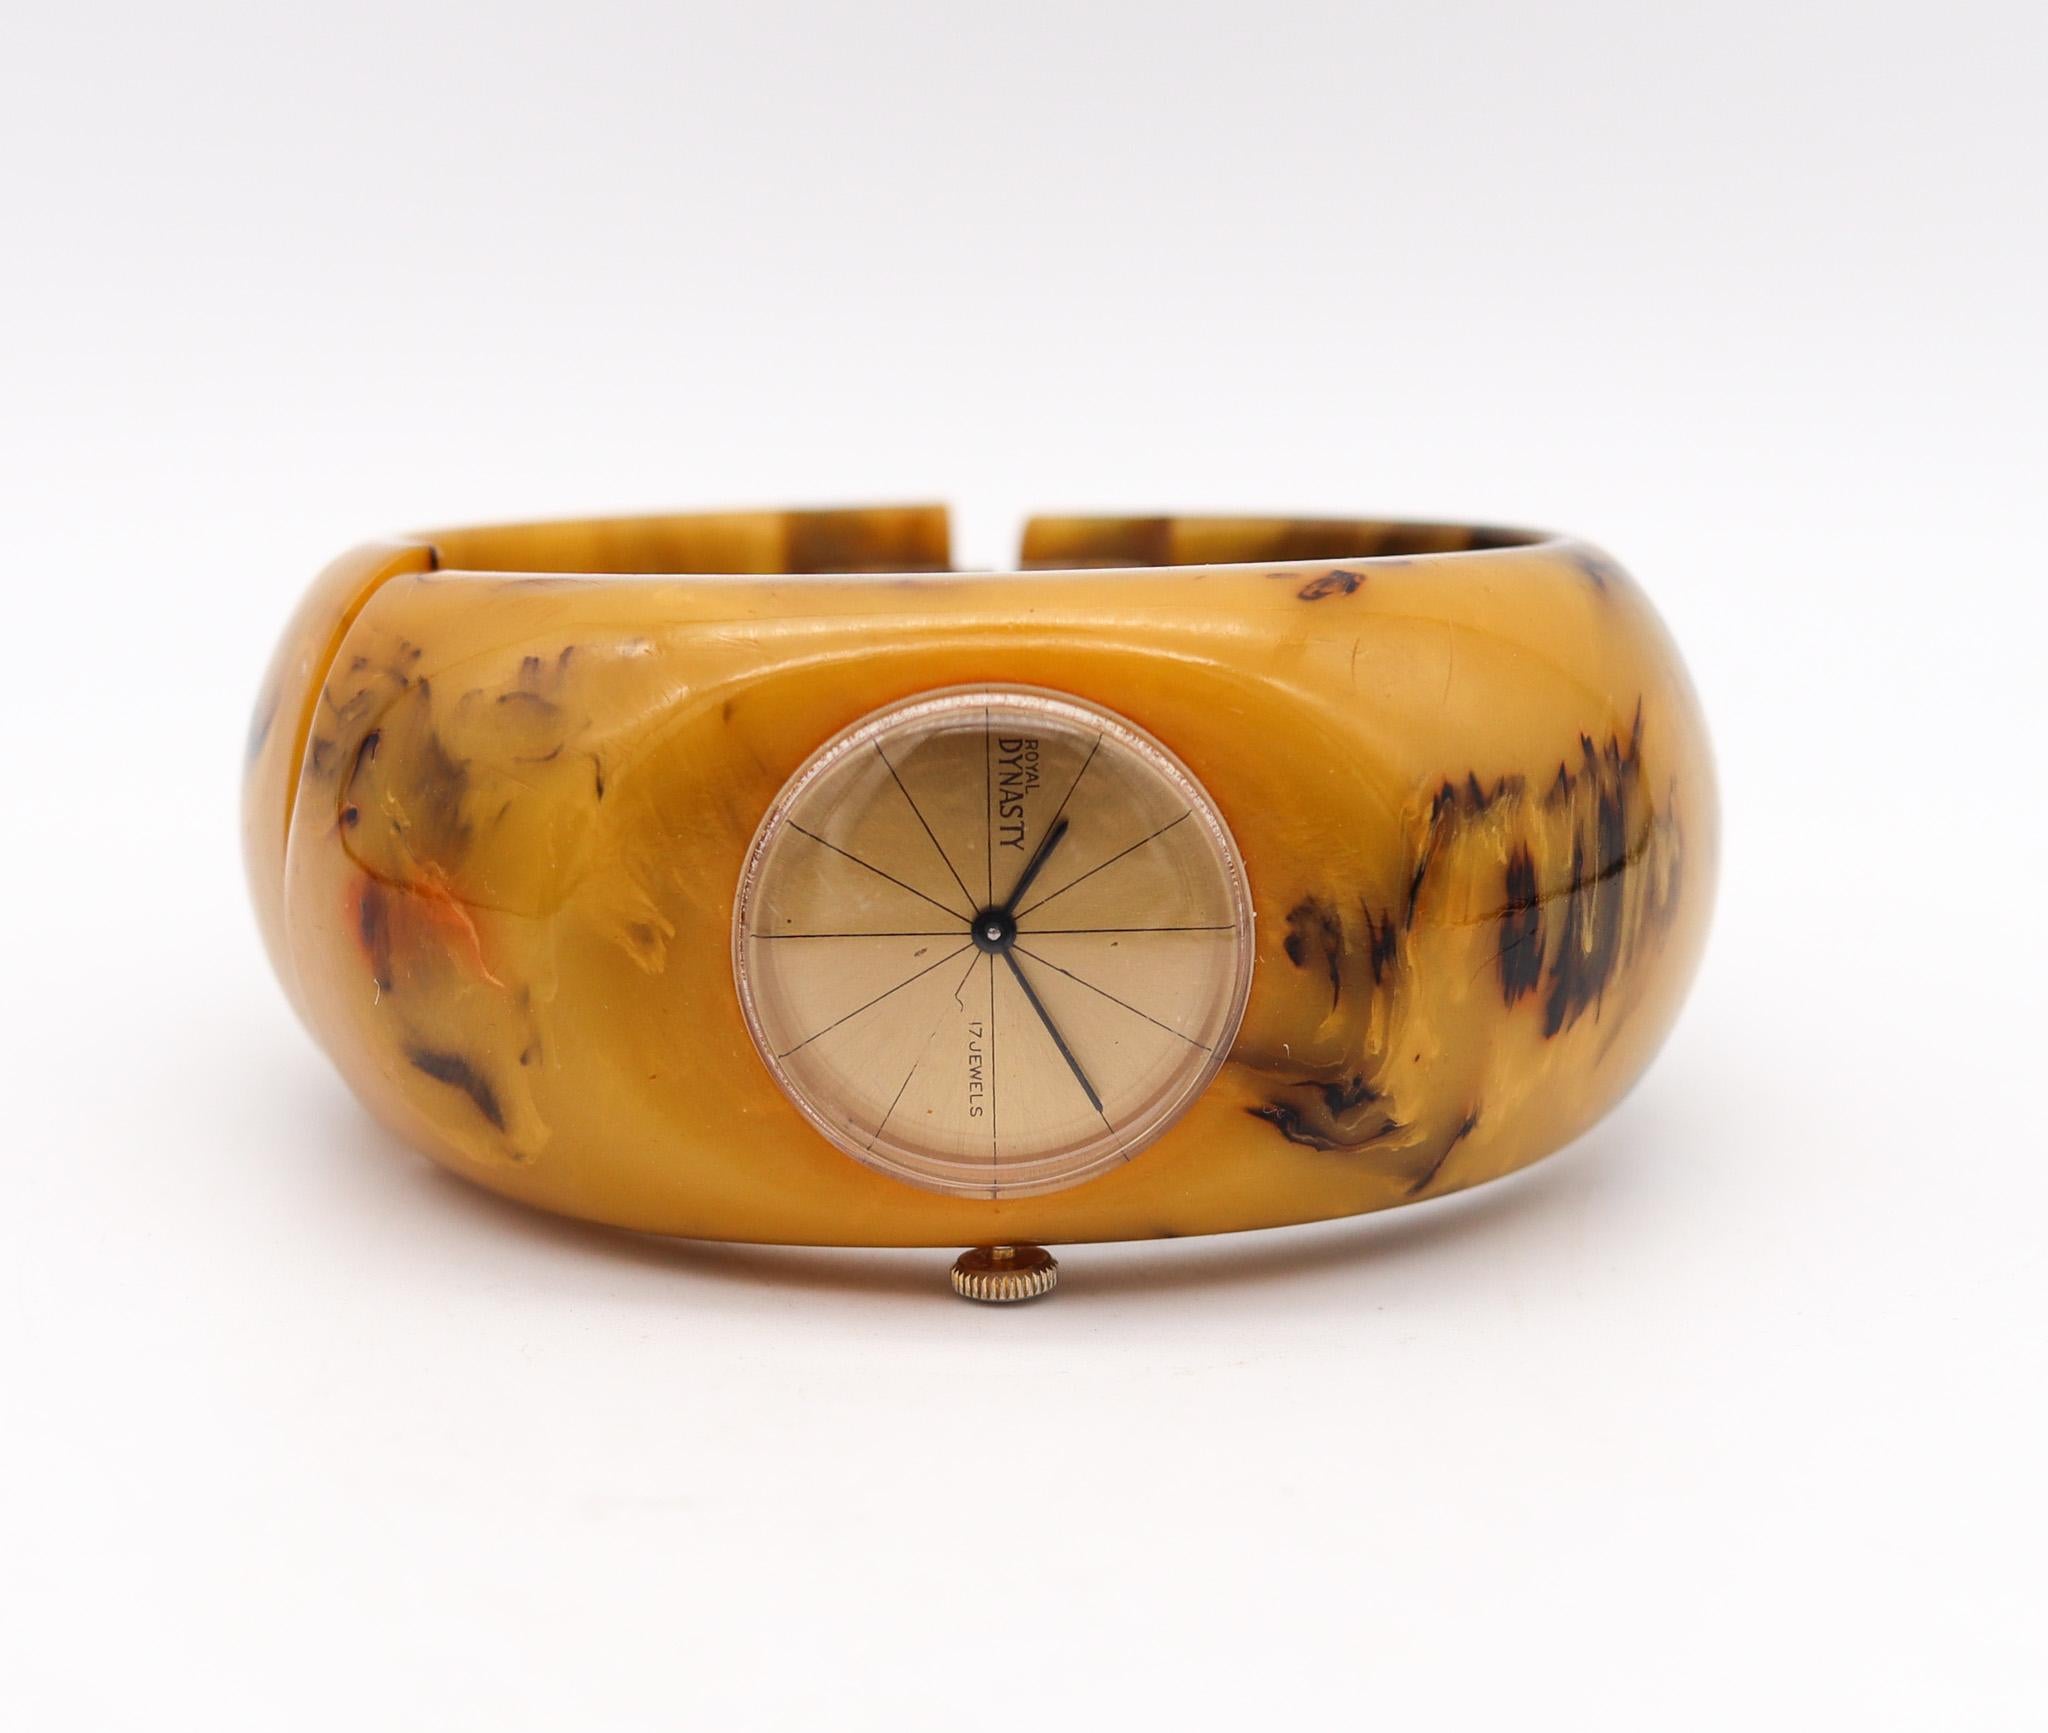 Butterscotch Bakelit Catalin Clamper Uhr entworfen von Royal Dynasty.

Ein seltenes, echtes Vintage-Butterscotch-Bakelit/Catalin-Armband der Royal Dynasty Company, das mit einer Schließe versehen ist. Es gibt ein Scharnier, mit dem sich das Armband